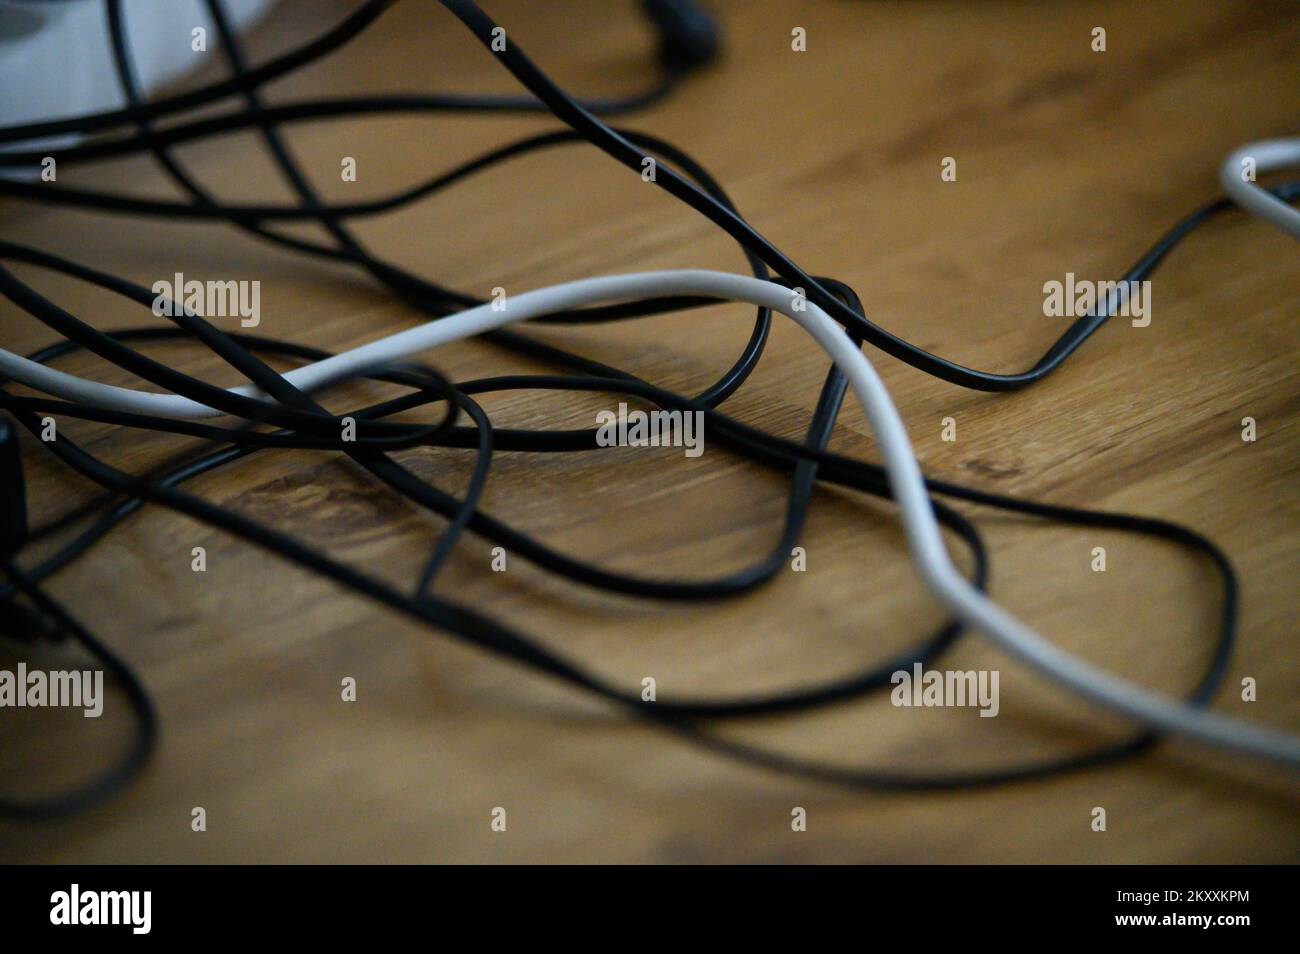 El caos de cables desorden de múltiples cables alargadores de cable eléctrico y tapones de contacto múltiple sobre un piso de madera o el fondo de la tabla Foto de stock